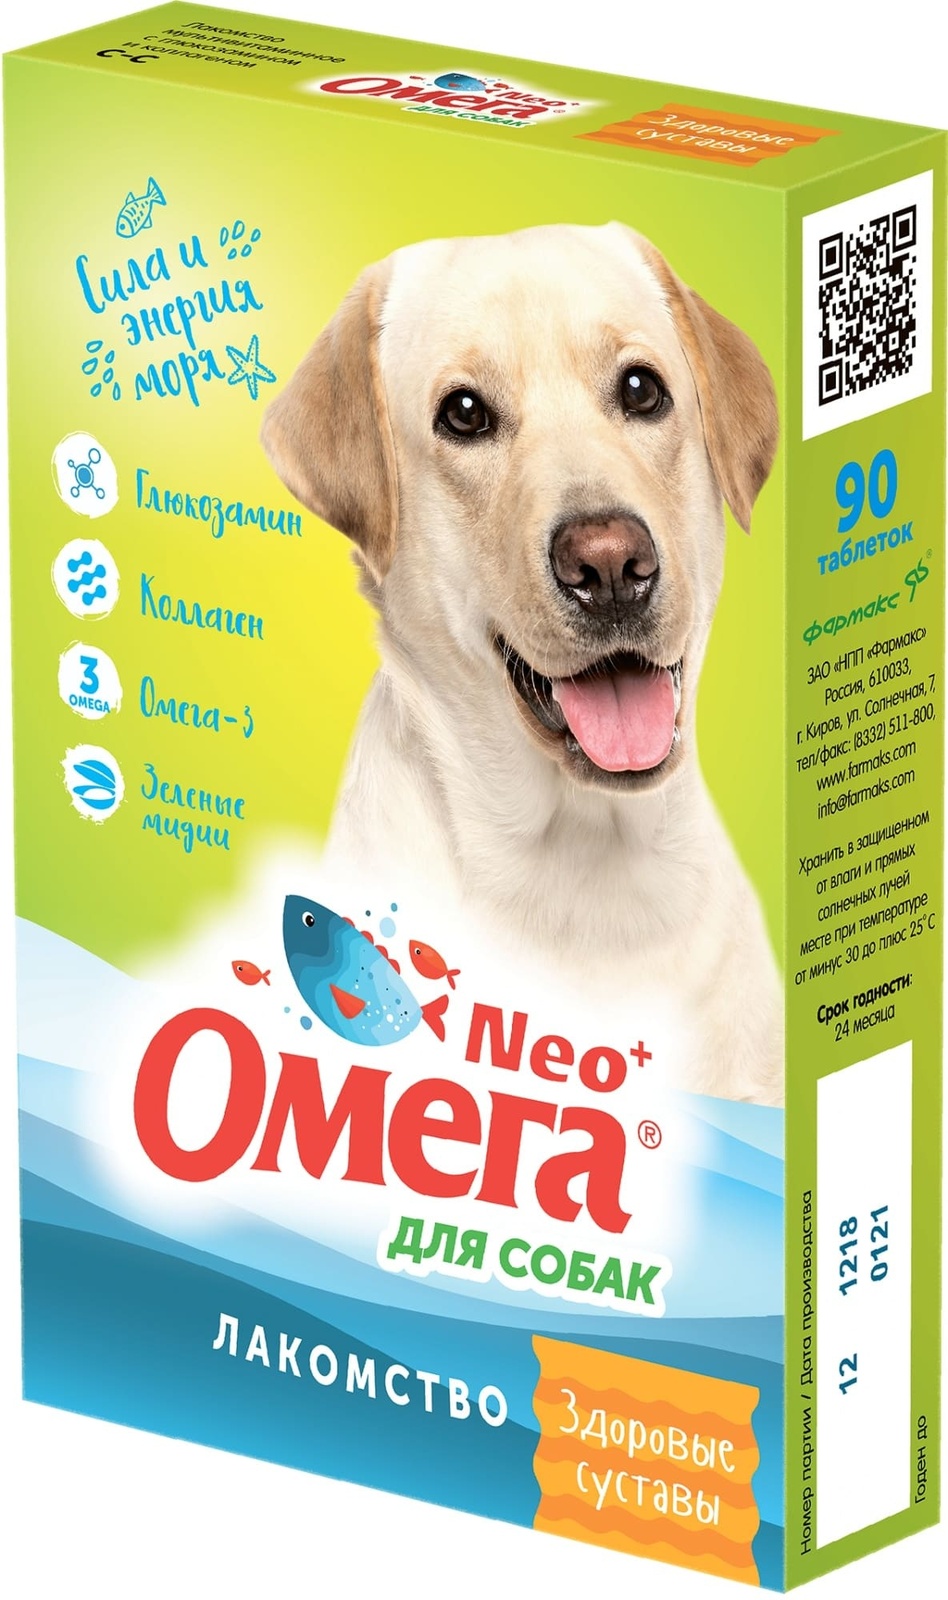 Фармакс Фармакс мультивитаминное лакомство Омега Neo+ Здоровые суставы с глюкозамином и коллагеном для собак (60 г)